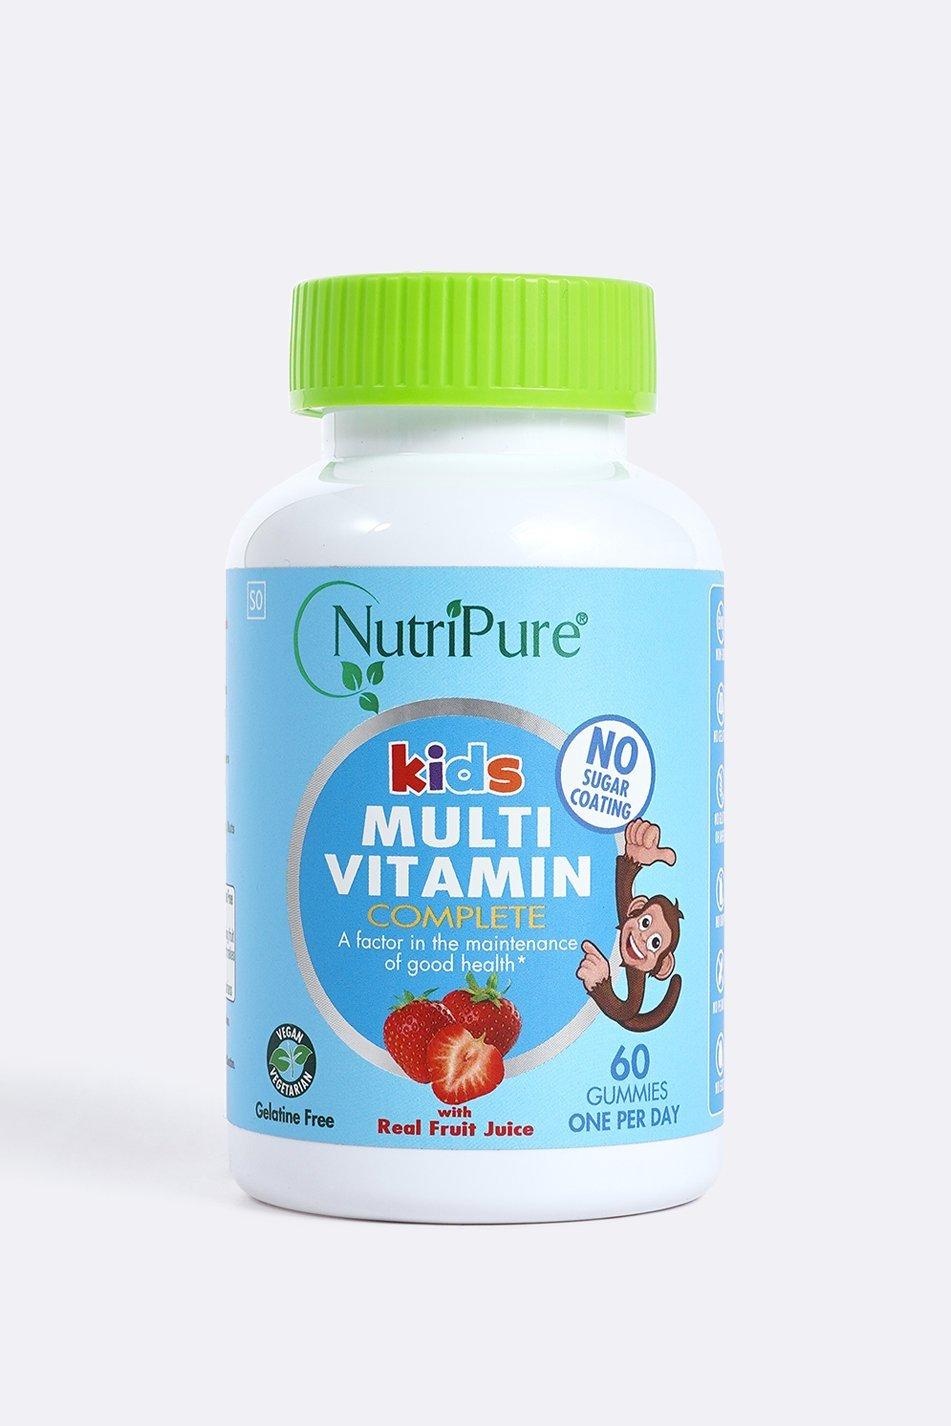 NutriPure Kids Multivitamin Reviews